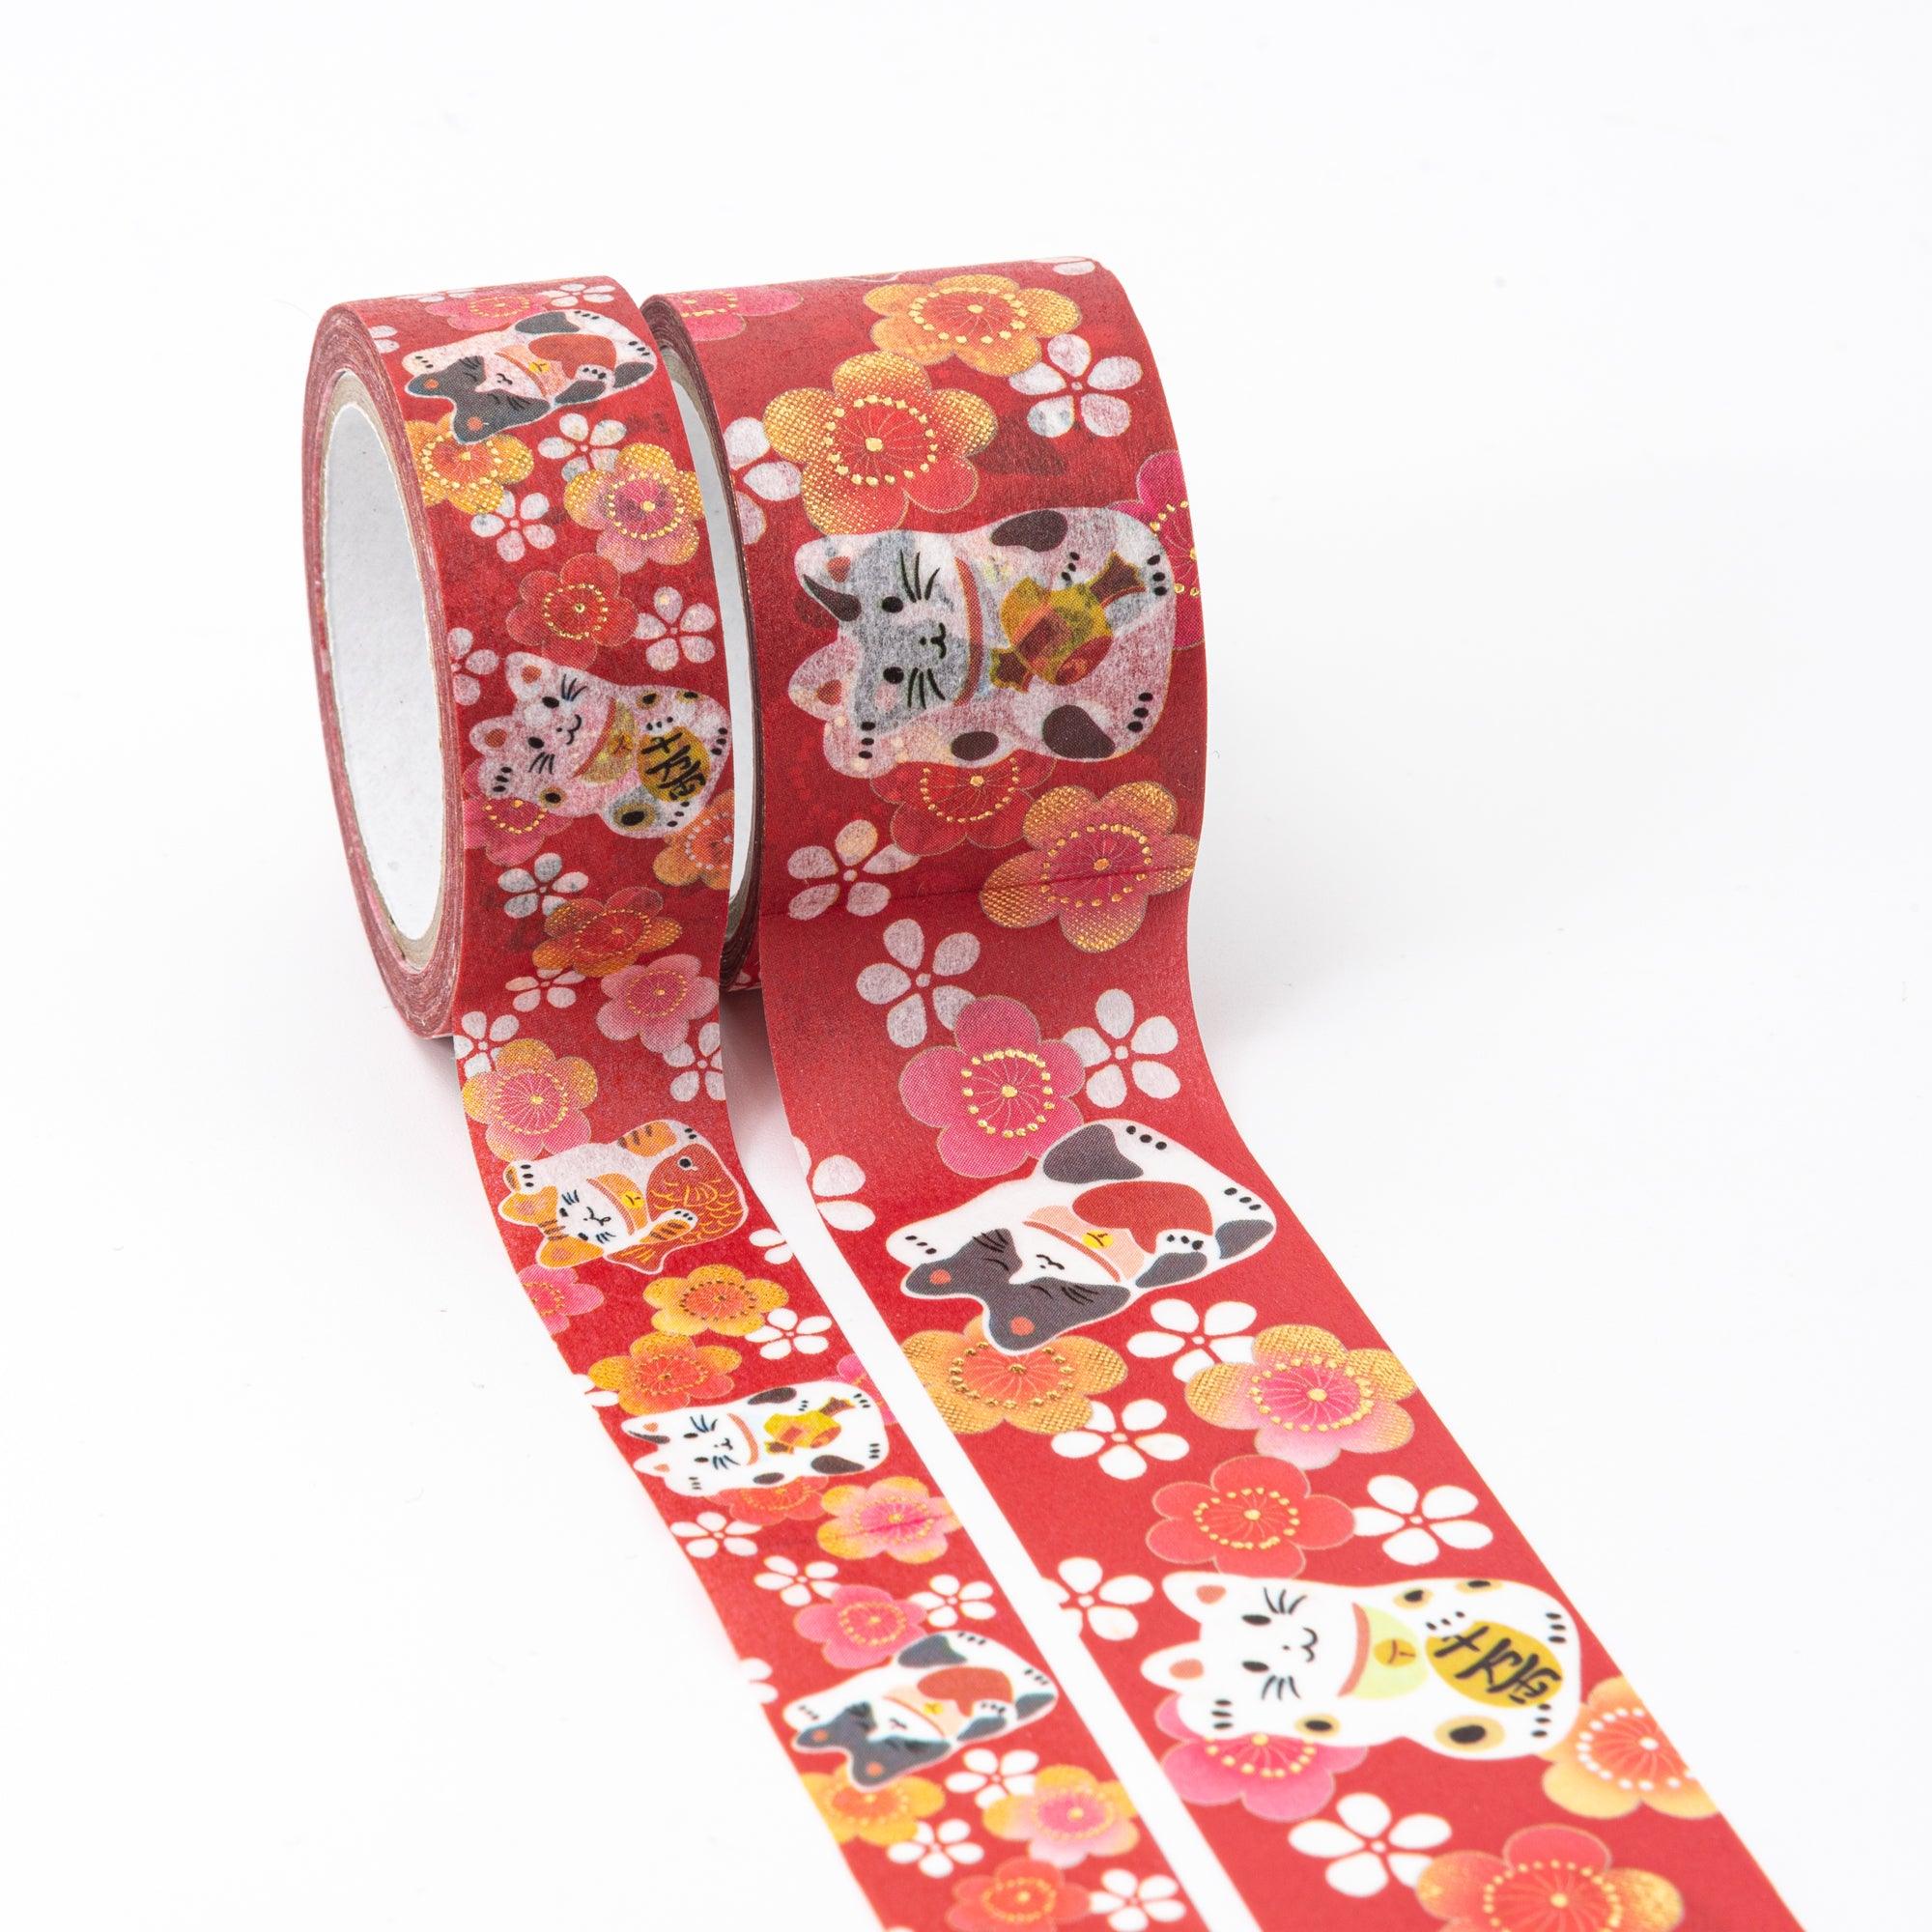 Kimono Beauty Series Maneki Neko Iyo Washi Tape - Kamiiso - Komorebi Stationery